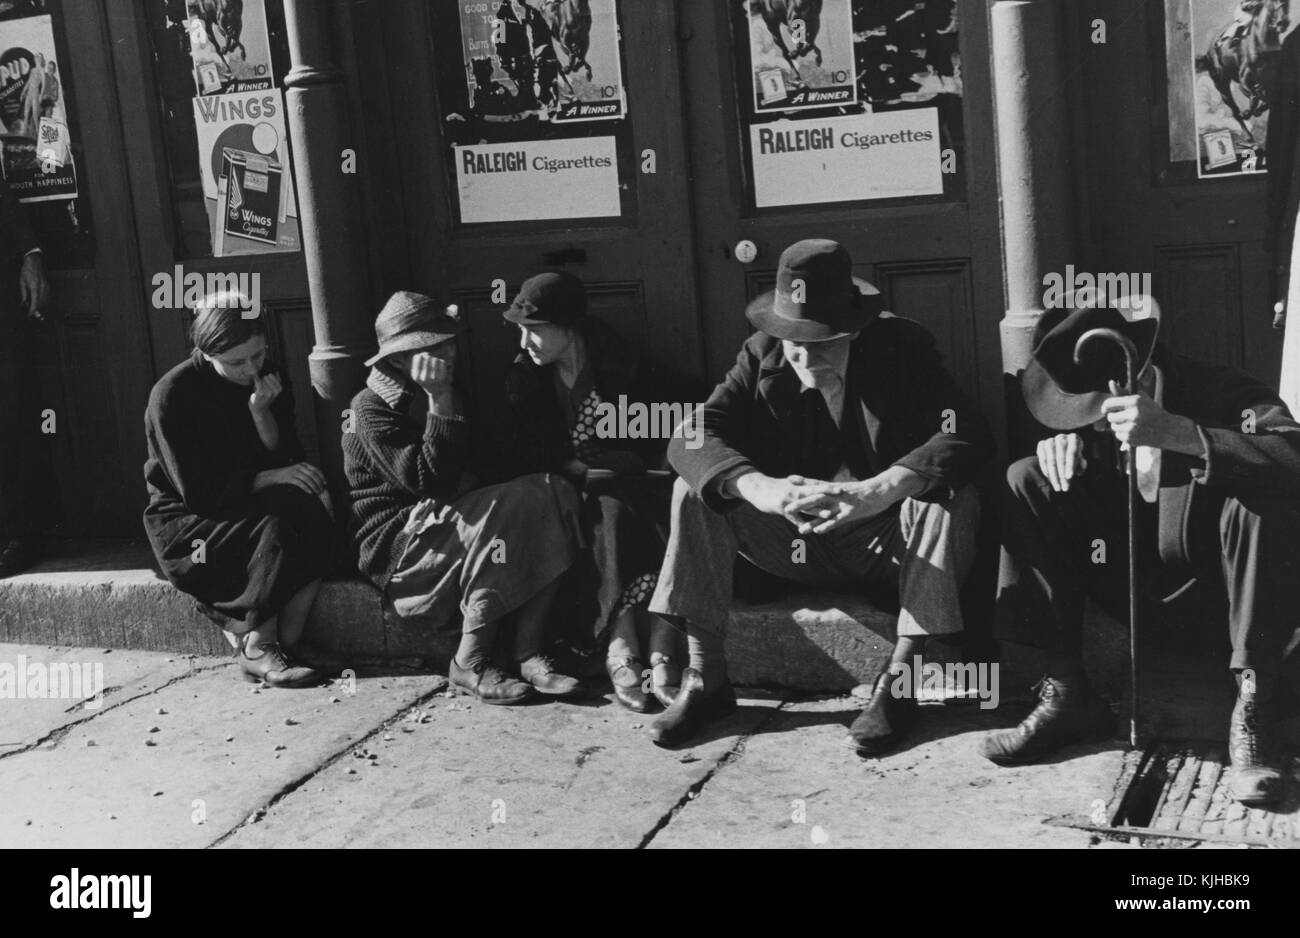 Una fotografía de tres mujeres y dos hombres sentados en una escalinata de concreto fuera de un edificio, los dos hombres llevan sombrero y vestimenta formal, las tres mujeres son todos luciendo vestidos y suéteres, estaban reunidos con otras personas como parte de una reunión religiosa, seis carteles que promocionan los cigarrillos están fijados a la parte exterior del edificio detrás de ellos, Tennessee, 1935. A partir de la biblioteca pública de Nueva York. Foto de stock